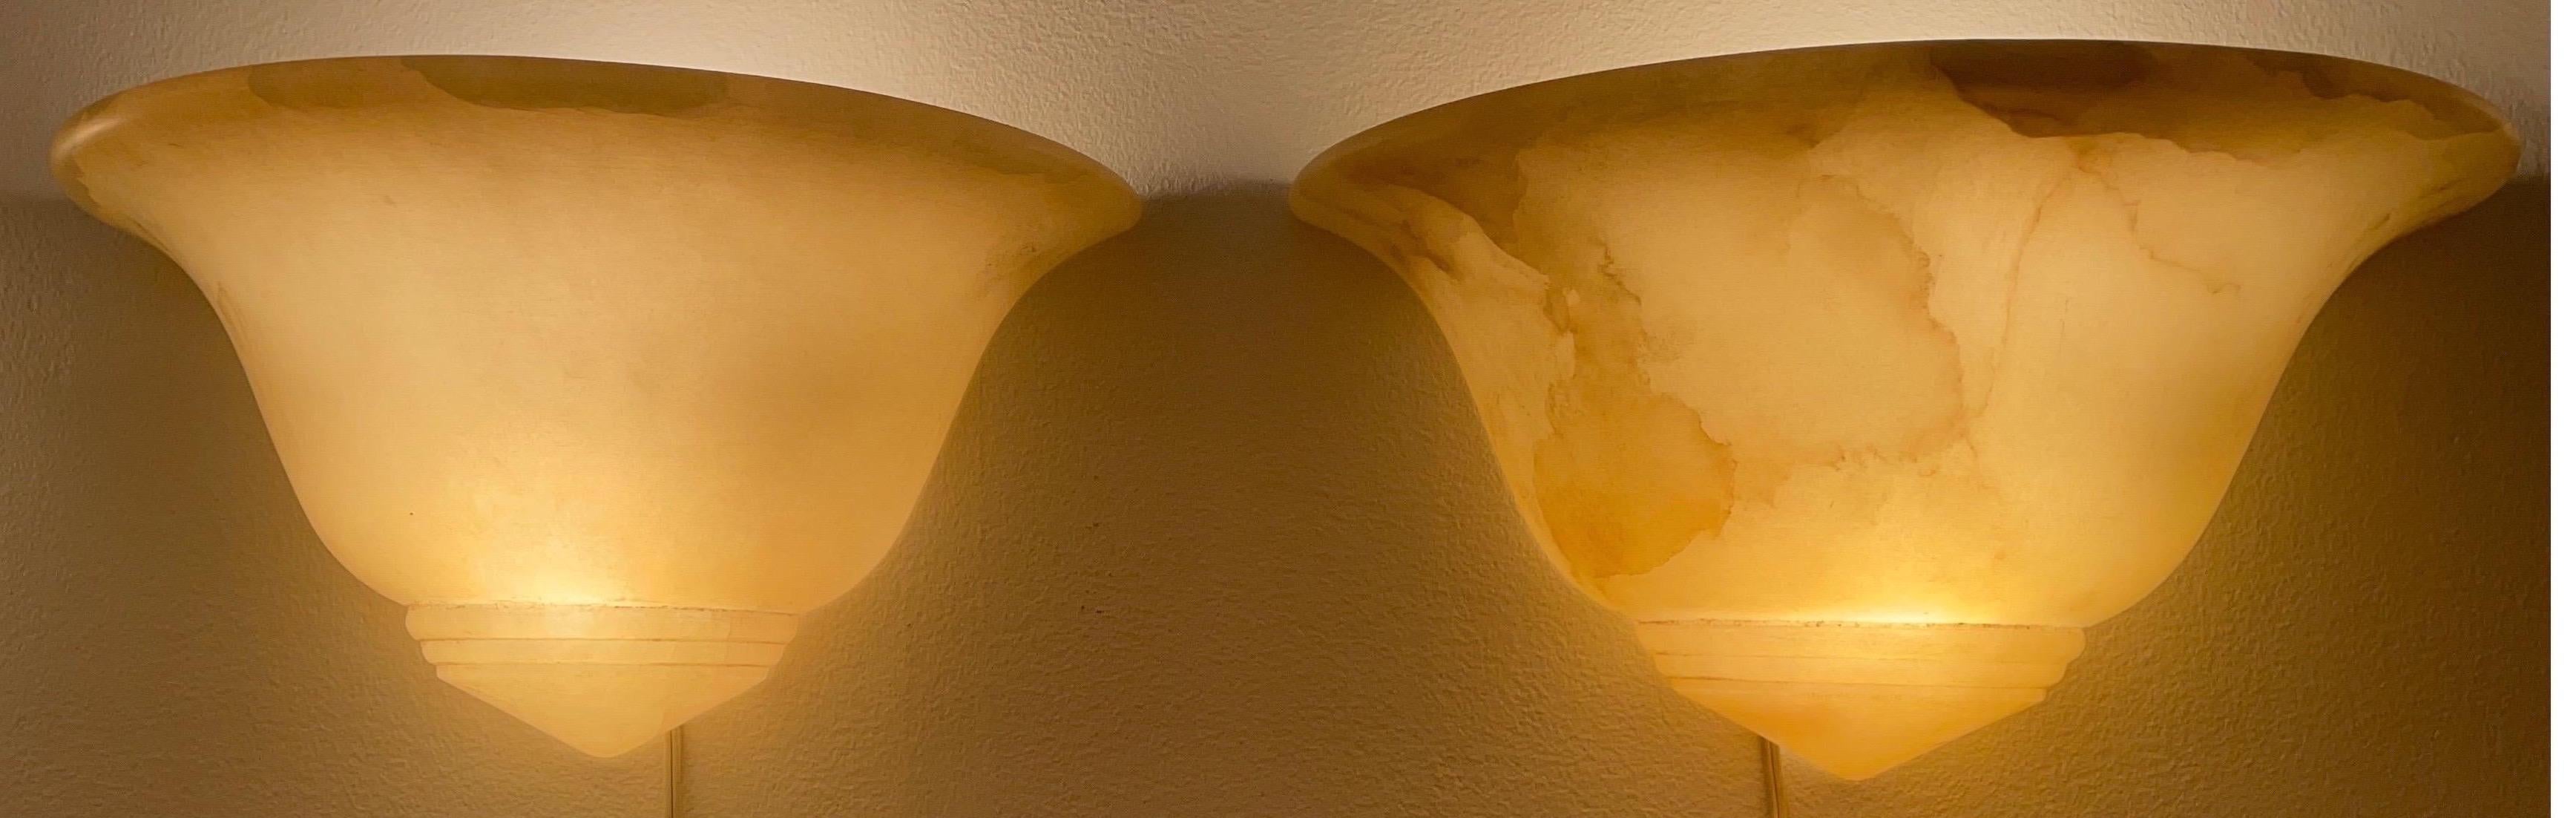 Schwungvolle Kurven und cremefarbener Stein in der Farbe von Vanillepudding verleihen Ihrem Interieur ein verträumtes, weiches Ambiente.